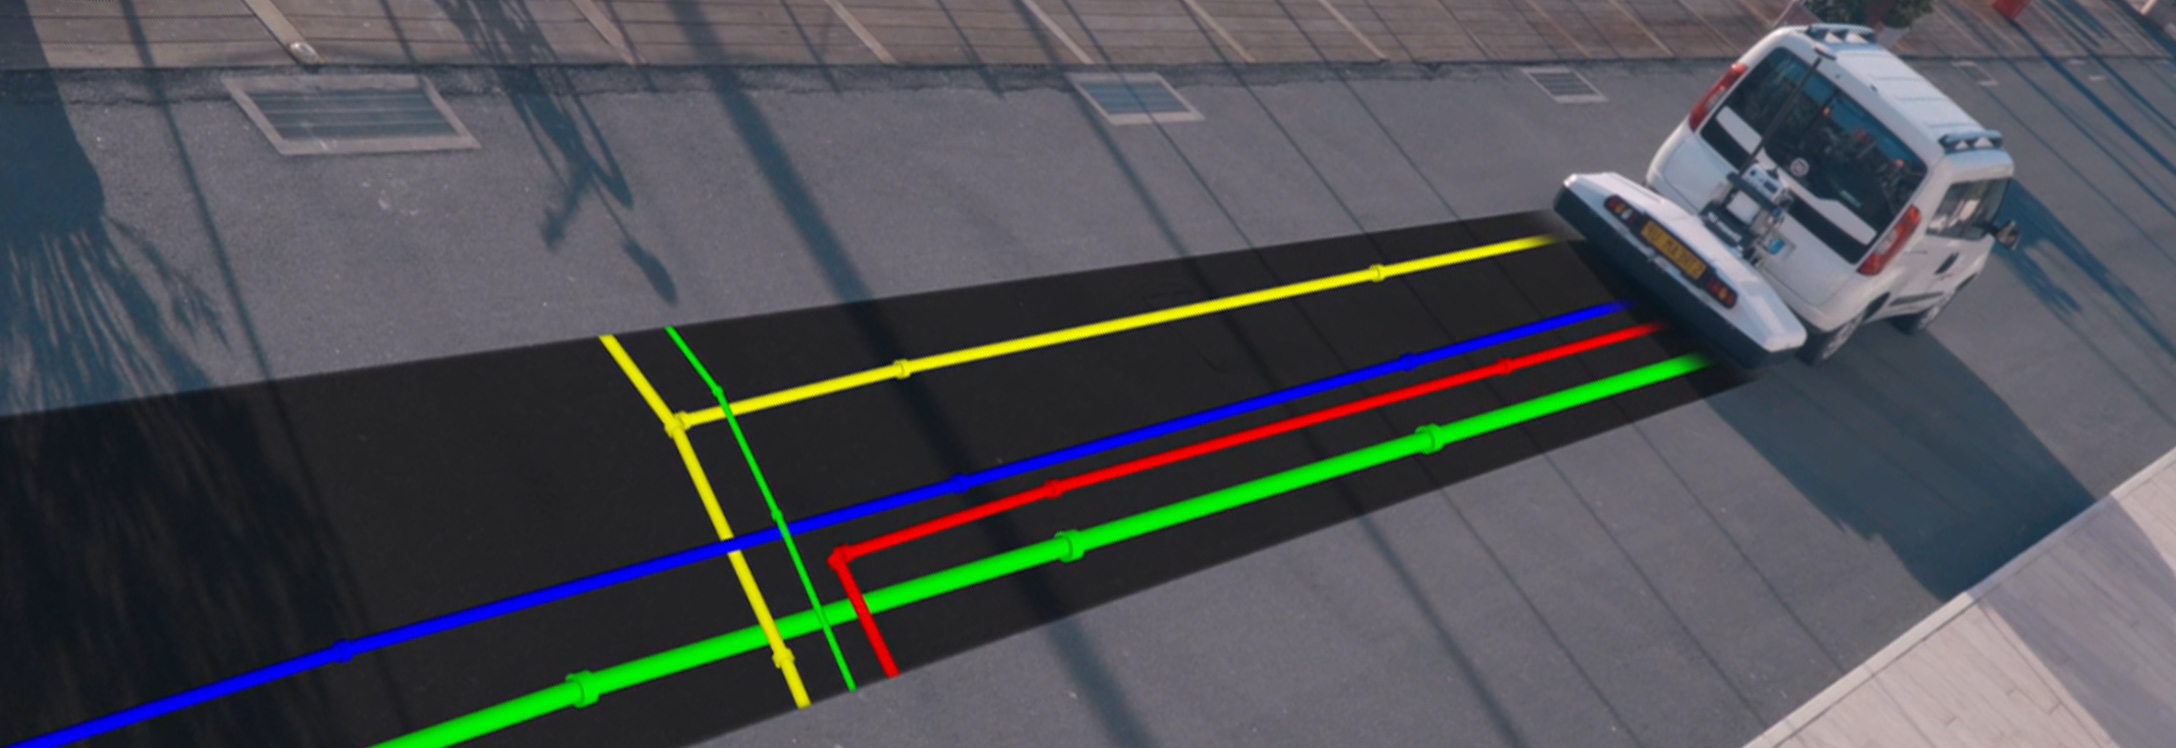 Grafisch dargestellte farbige Rohre, die beim Vorbeifahren eines Vans mit einem angeschlossenen Bodenradargerät sichtbar werden